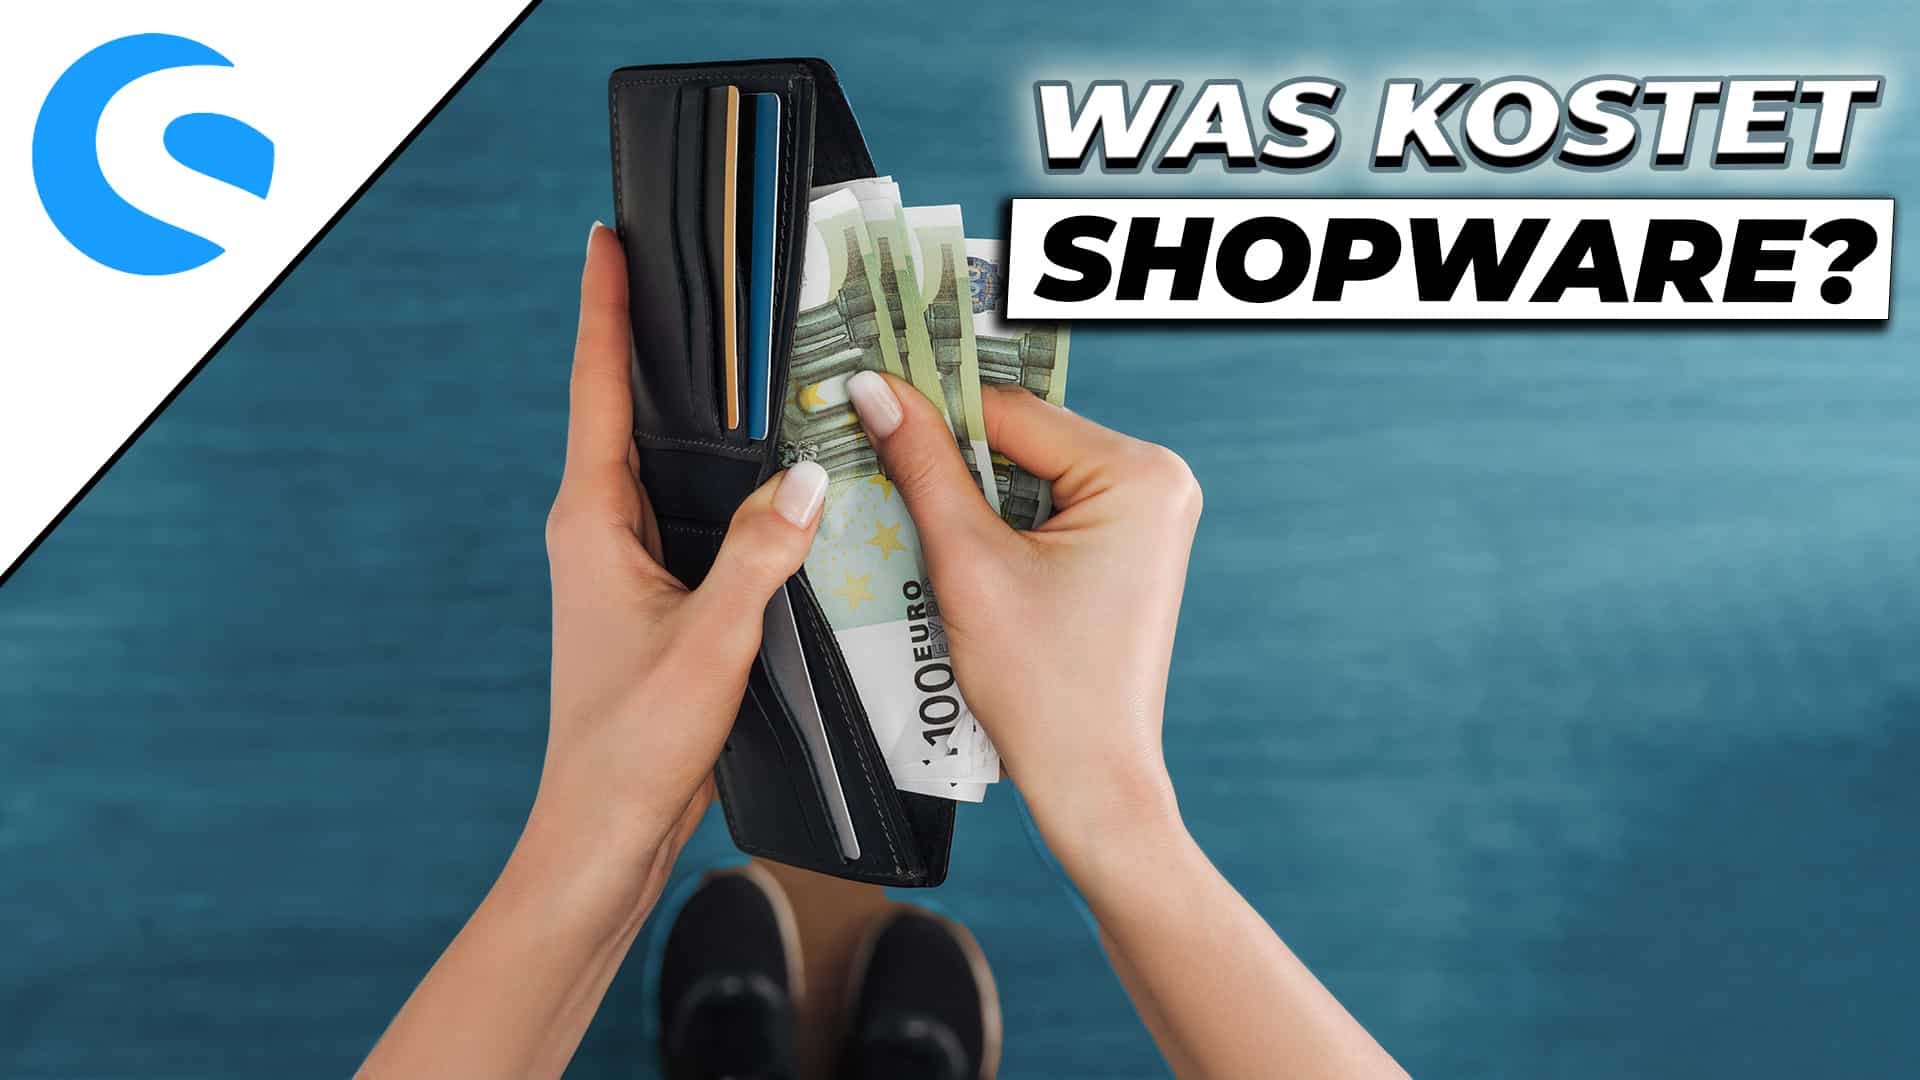 Was kostet Shopware? – Wir haben die Antwort